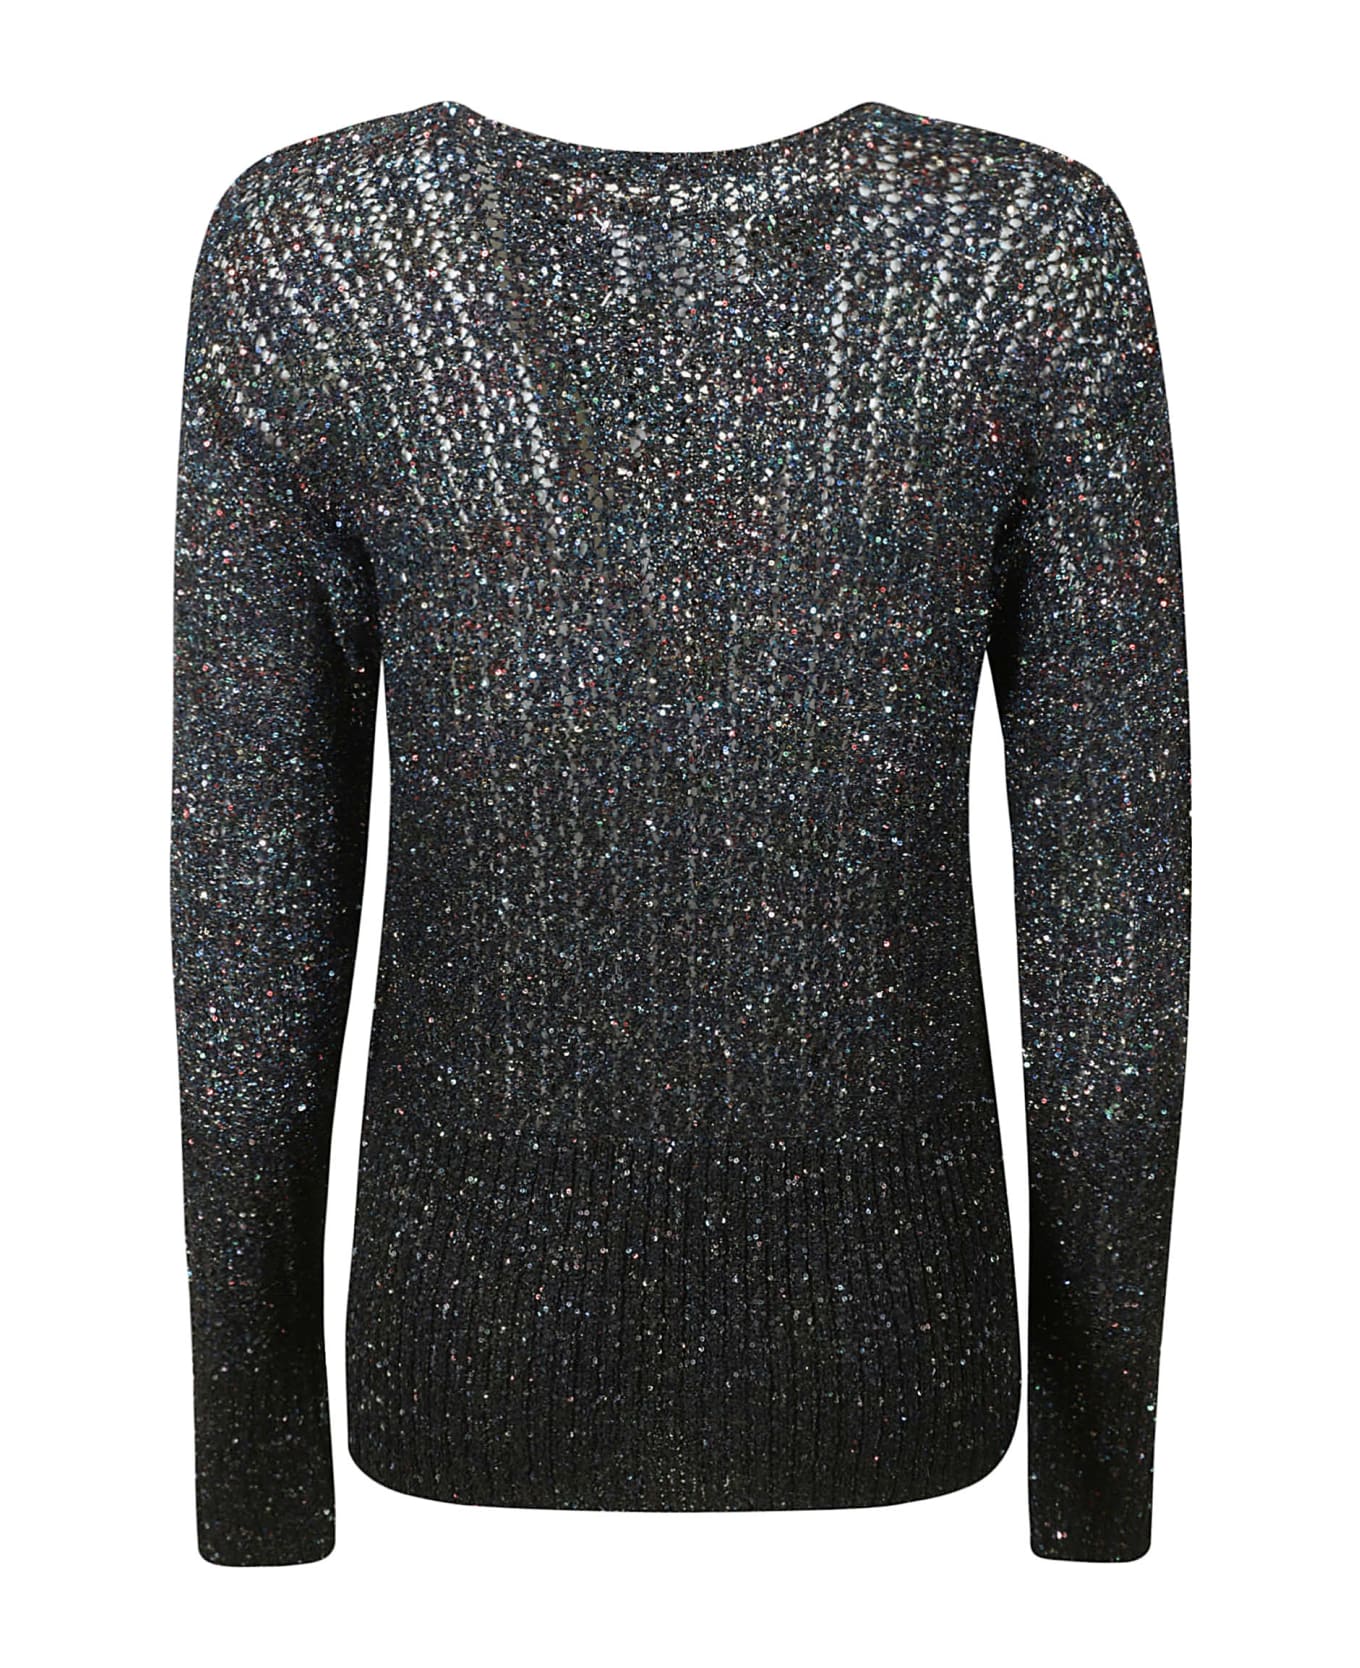 Maison Margiela Perforated Embellished Sweater - Multicolor